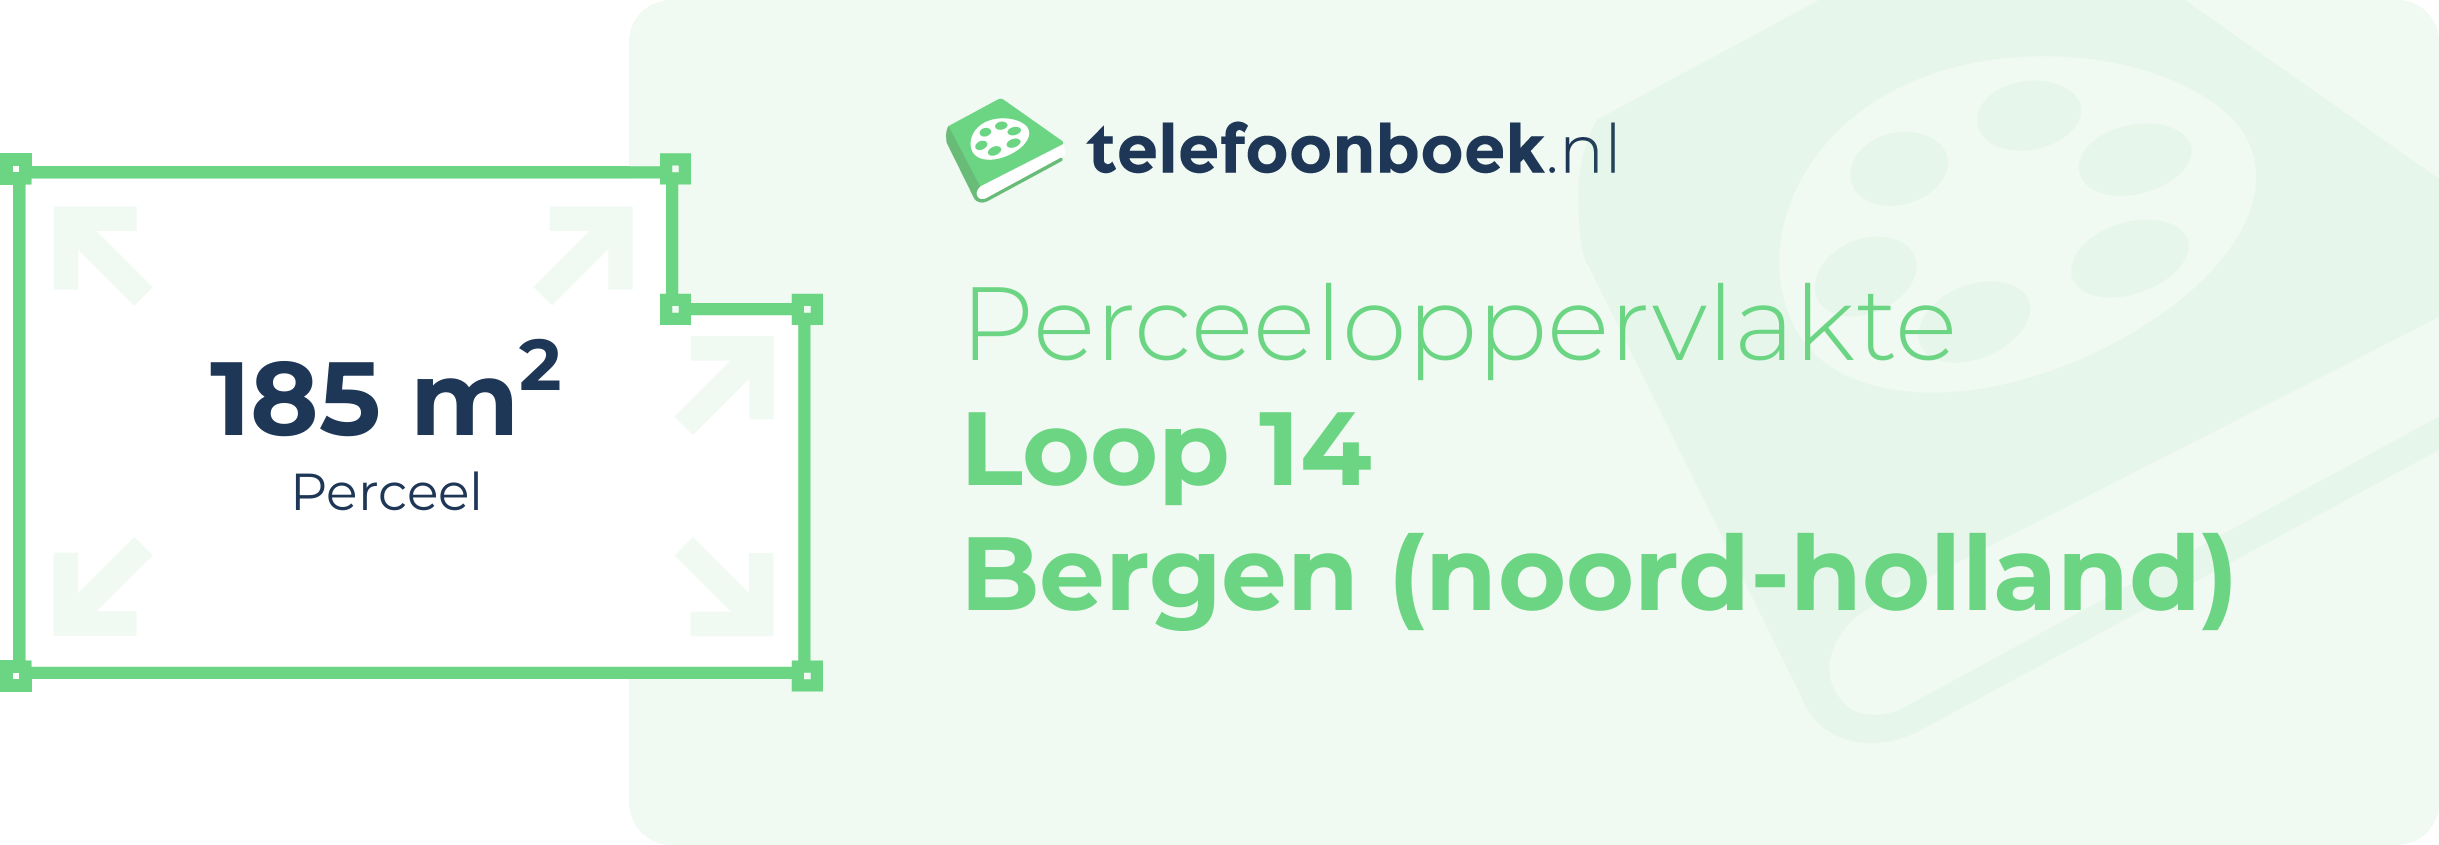 Perceeloppervlakte Loop 14 Bergen (Noord-Holland)